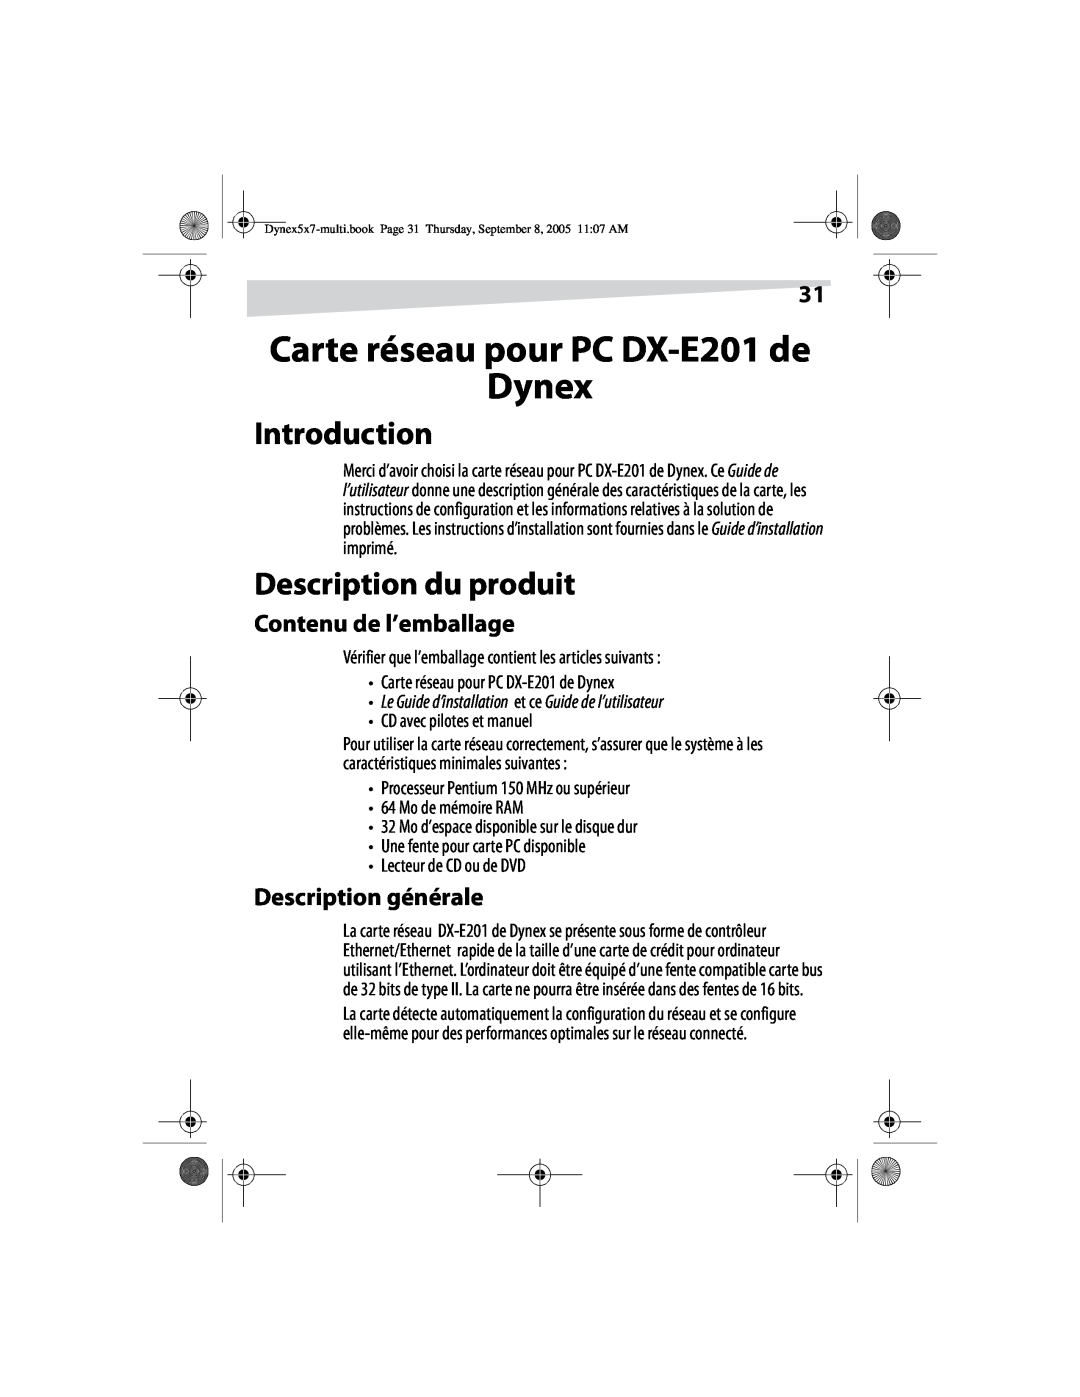 Dynex manual Carte réseau pour PC DX-E201 de Dynex, Description du produit, Contenu de l’emballage, Description générale 